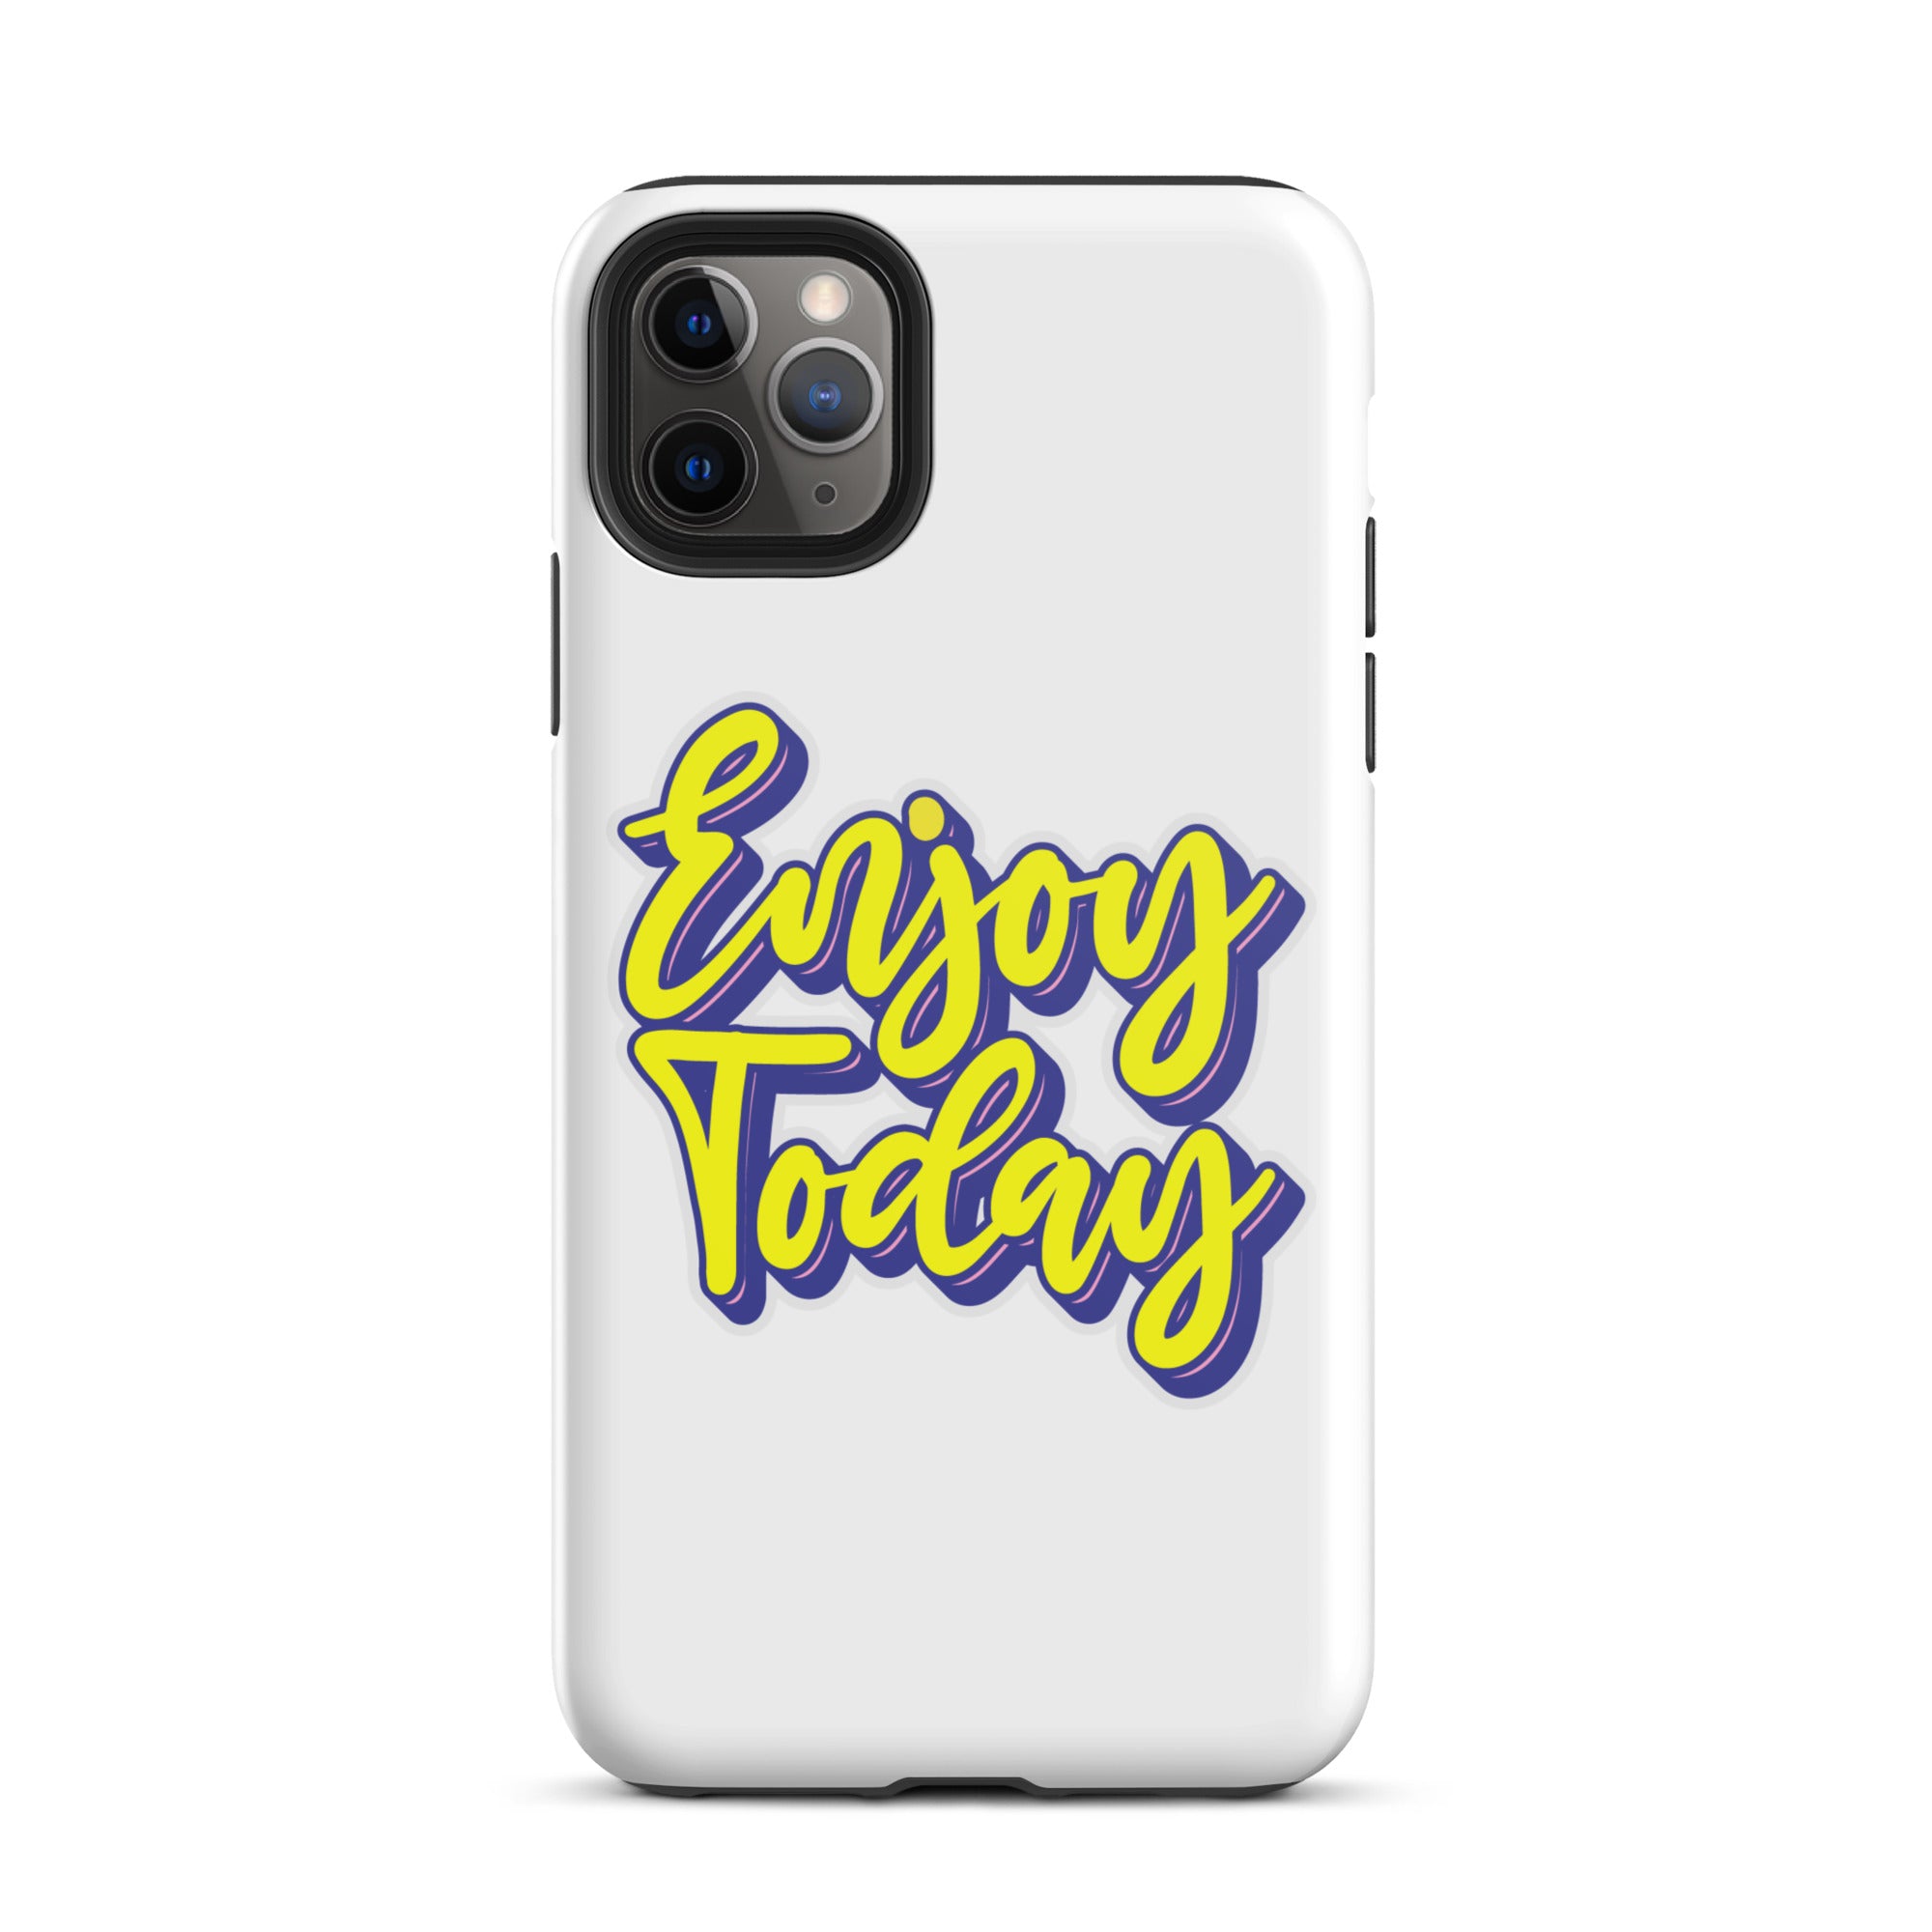 Enjoy Today - Tough iPhone case